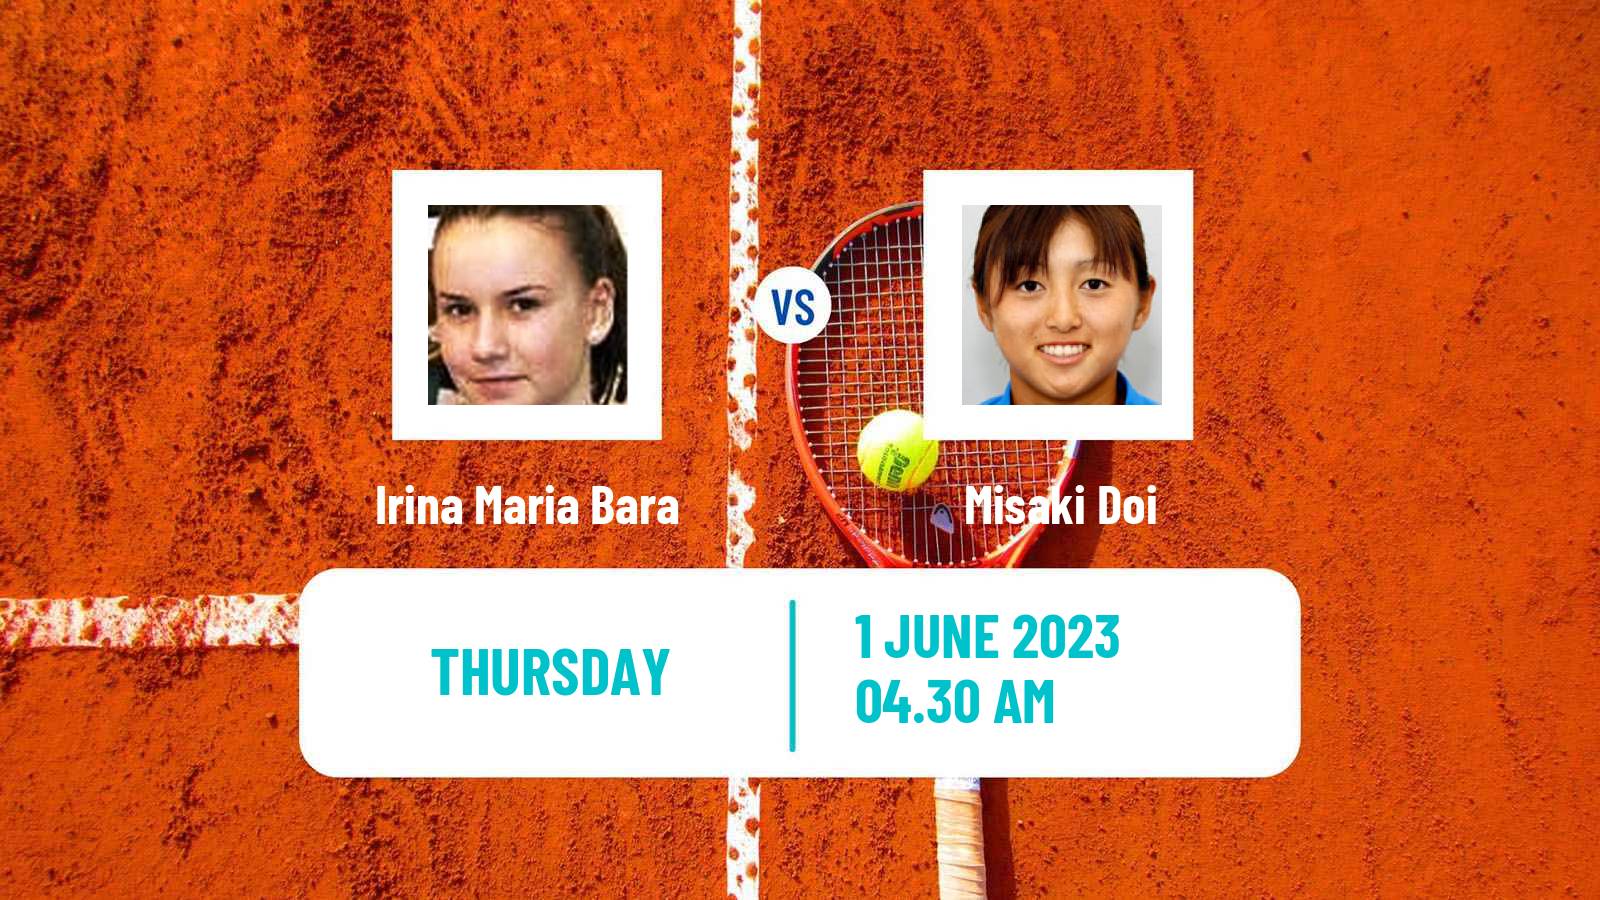 Tennis ITF W40 Otocec 2 Women Irina Maria Bara - Misaki Doi